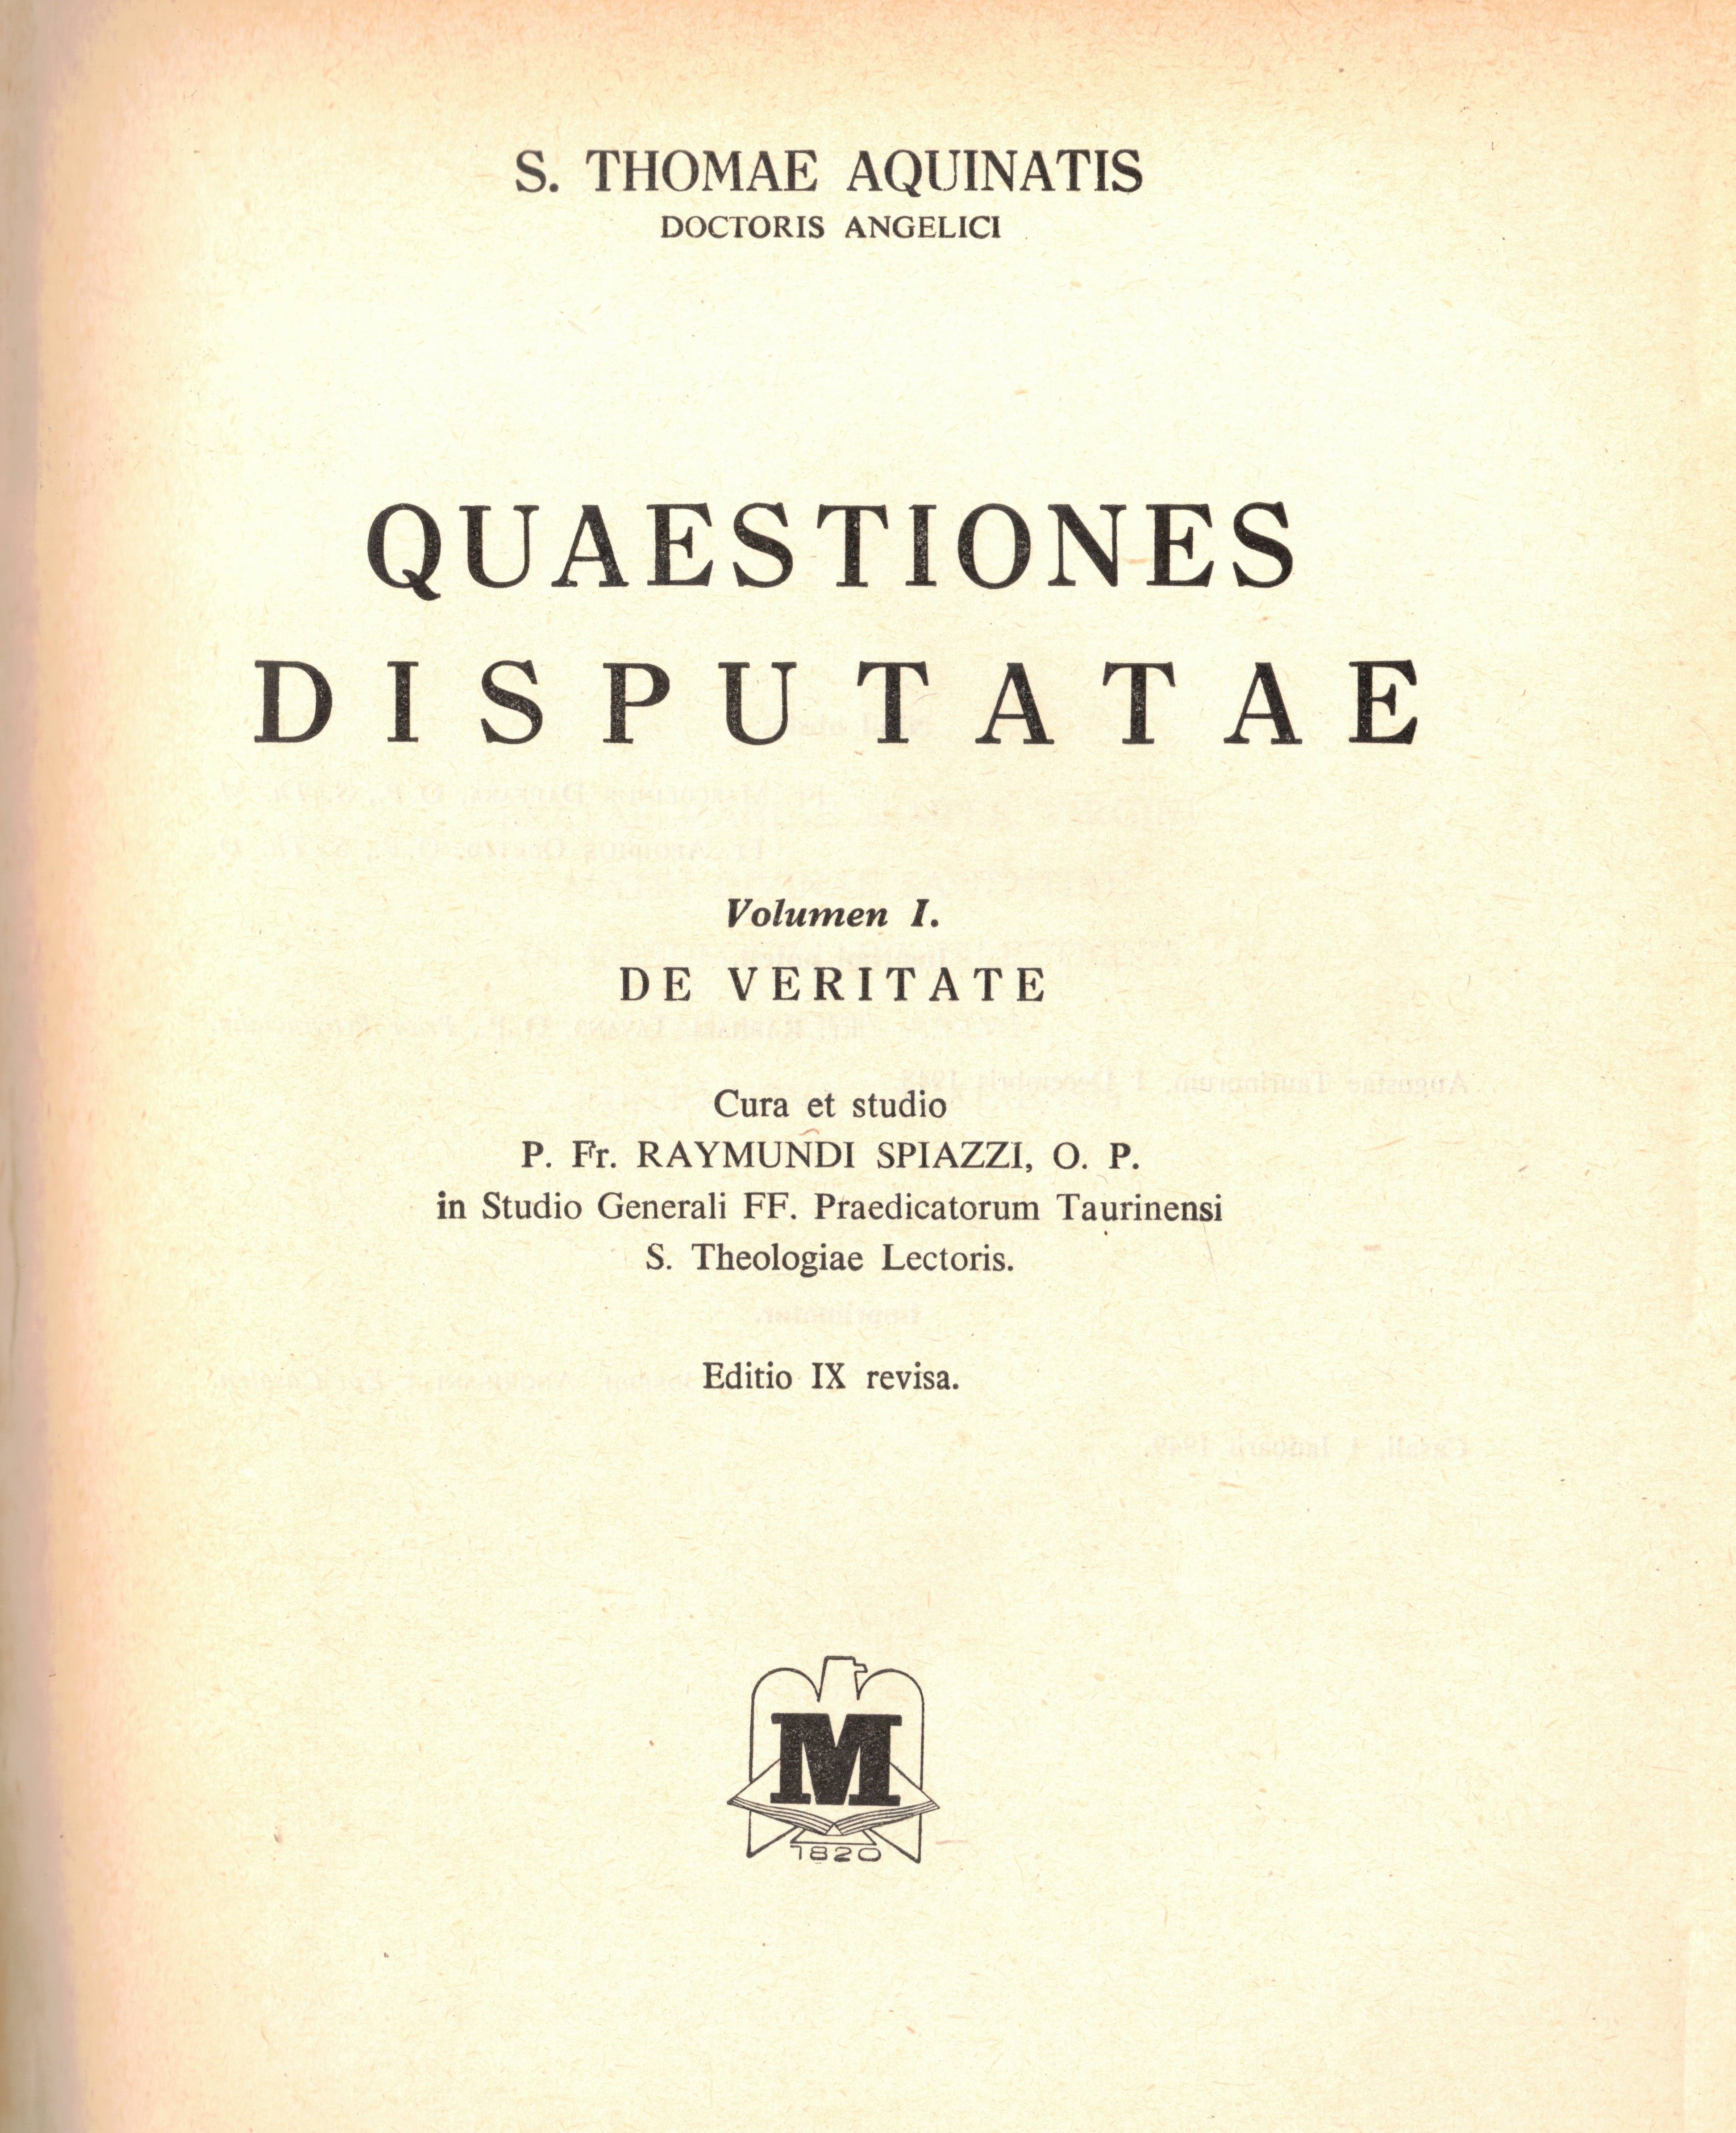 Questiones Disputatae, T. I° e II°. S. Thomae Aquinati